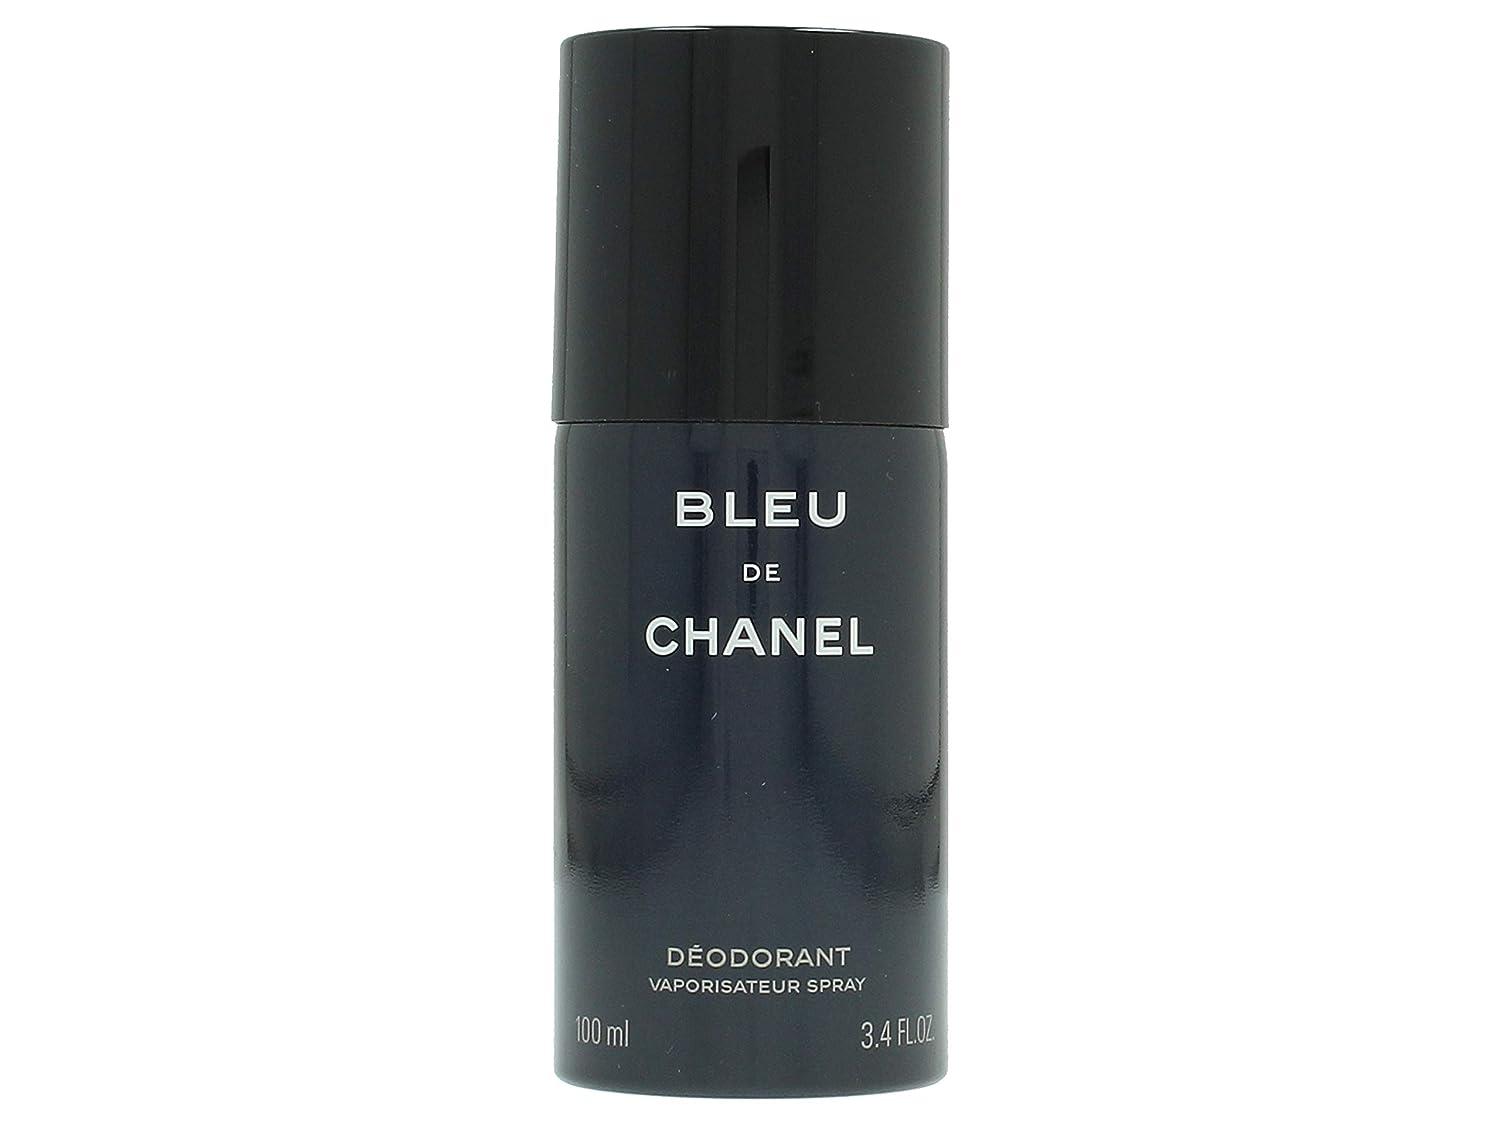  CHANEL Bleu De Deodorant Spray, 3.4 Oz : Beauty & Personal Care